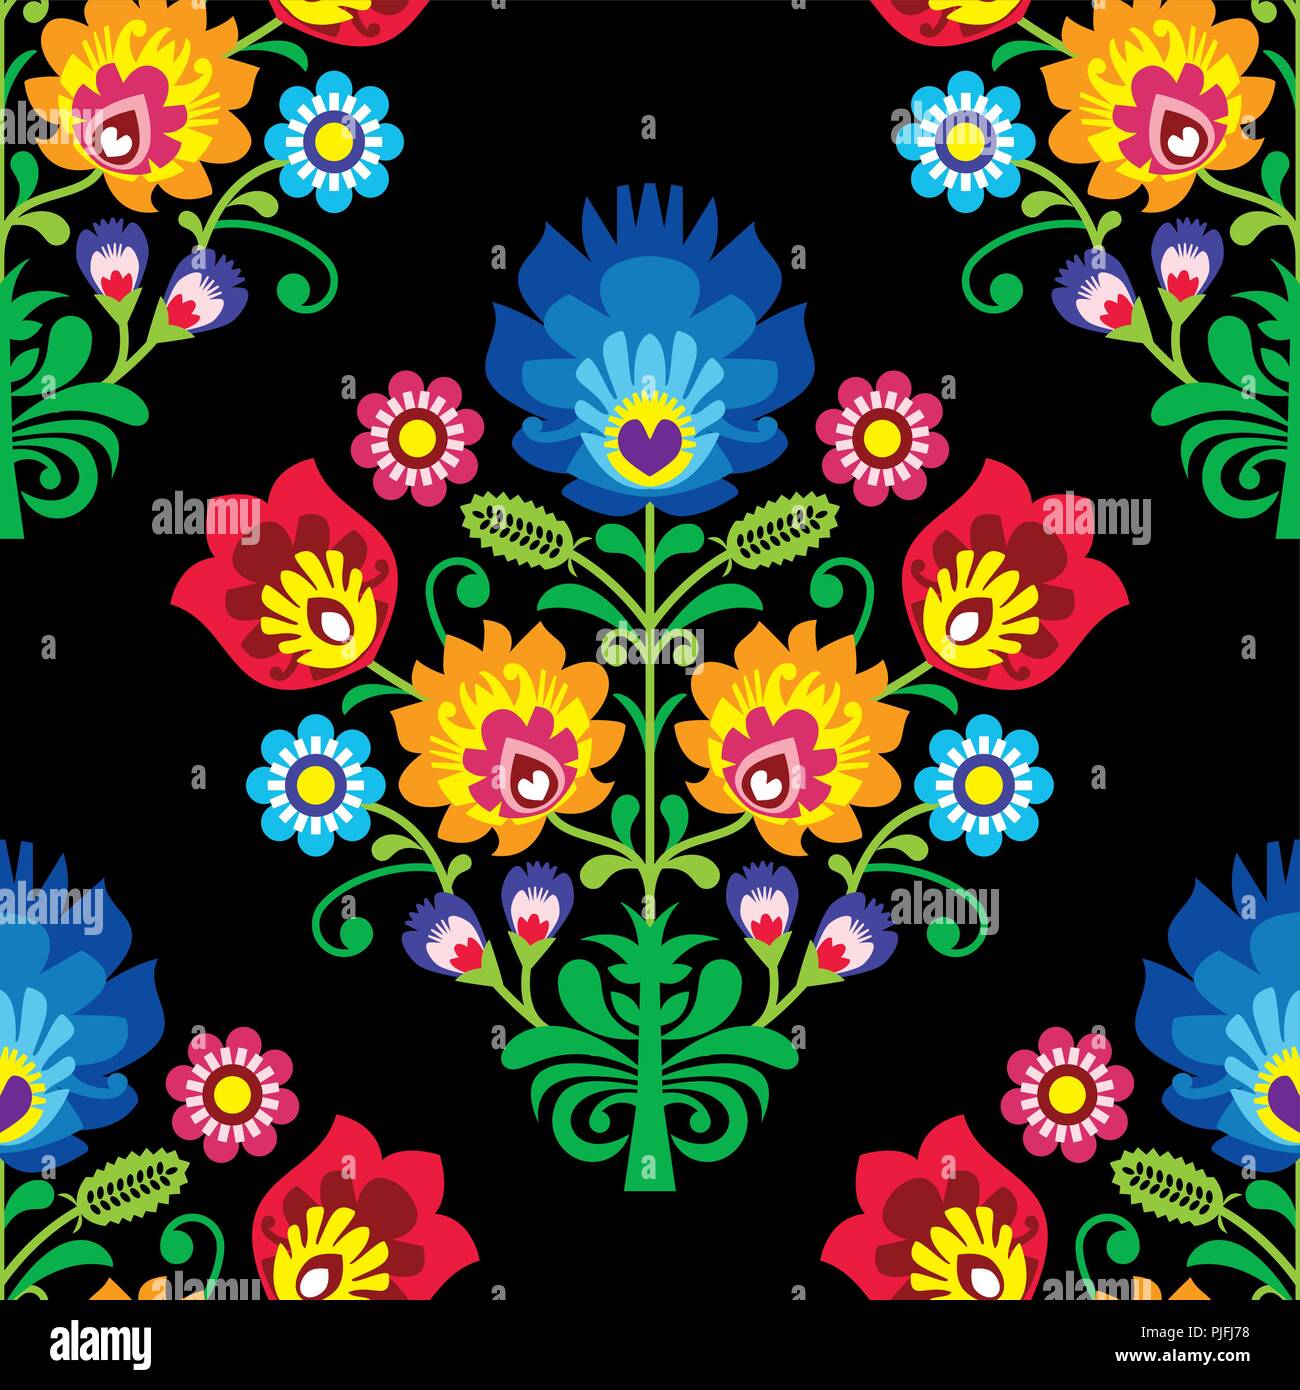 Seamless vector art populaire - motif traditionnel polonais conception répétitives avec des fleurs - wycinanki lowickie. Floral background Retro, coloré slaves te Illustration de Vecteur